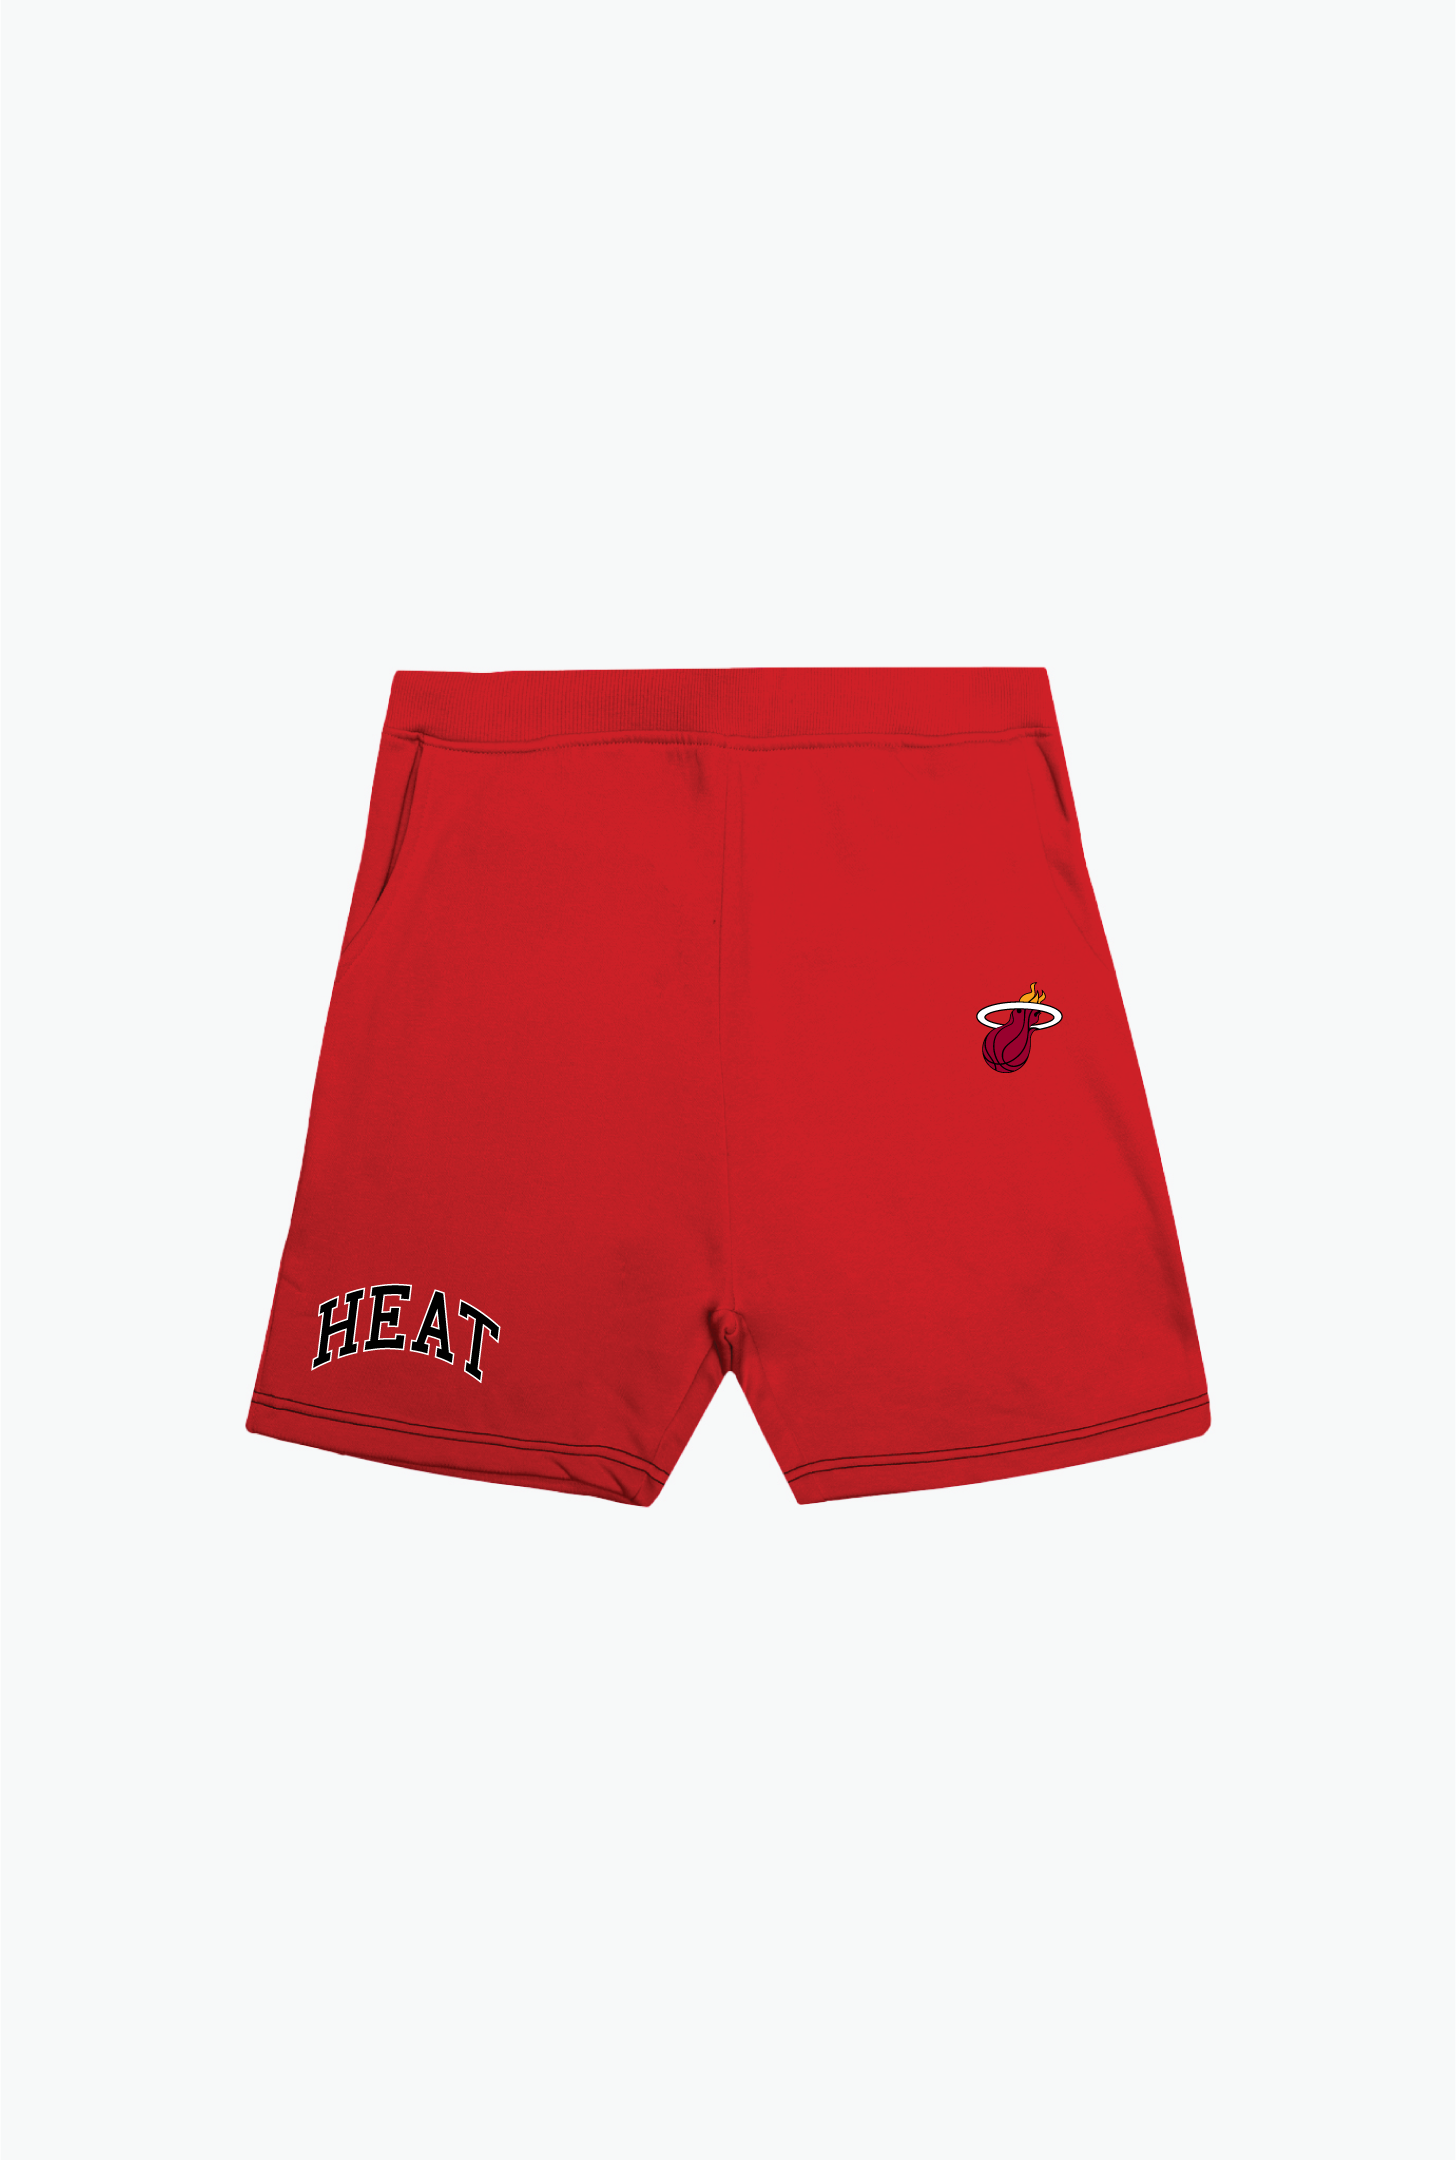 Miami Heat Playoffs Fleece Shorts - Red